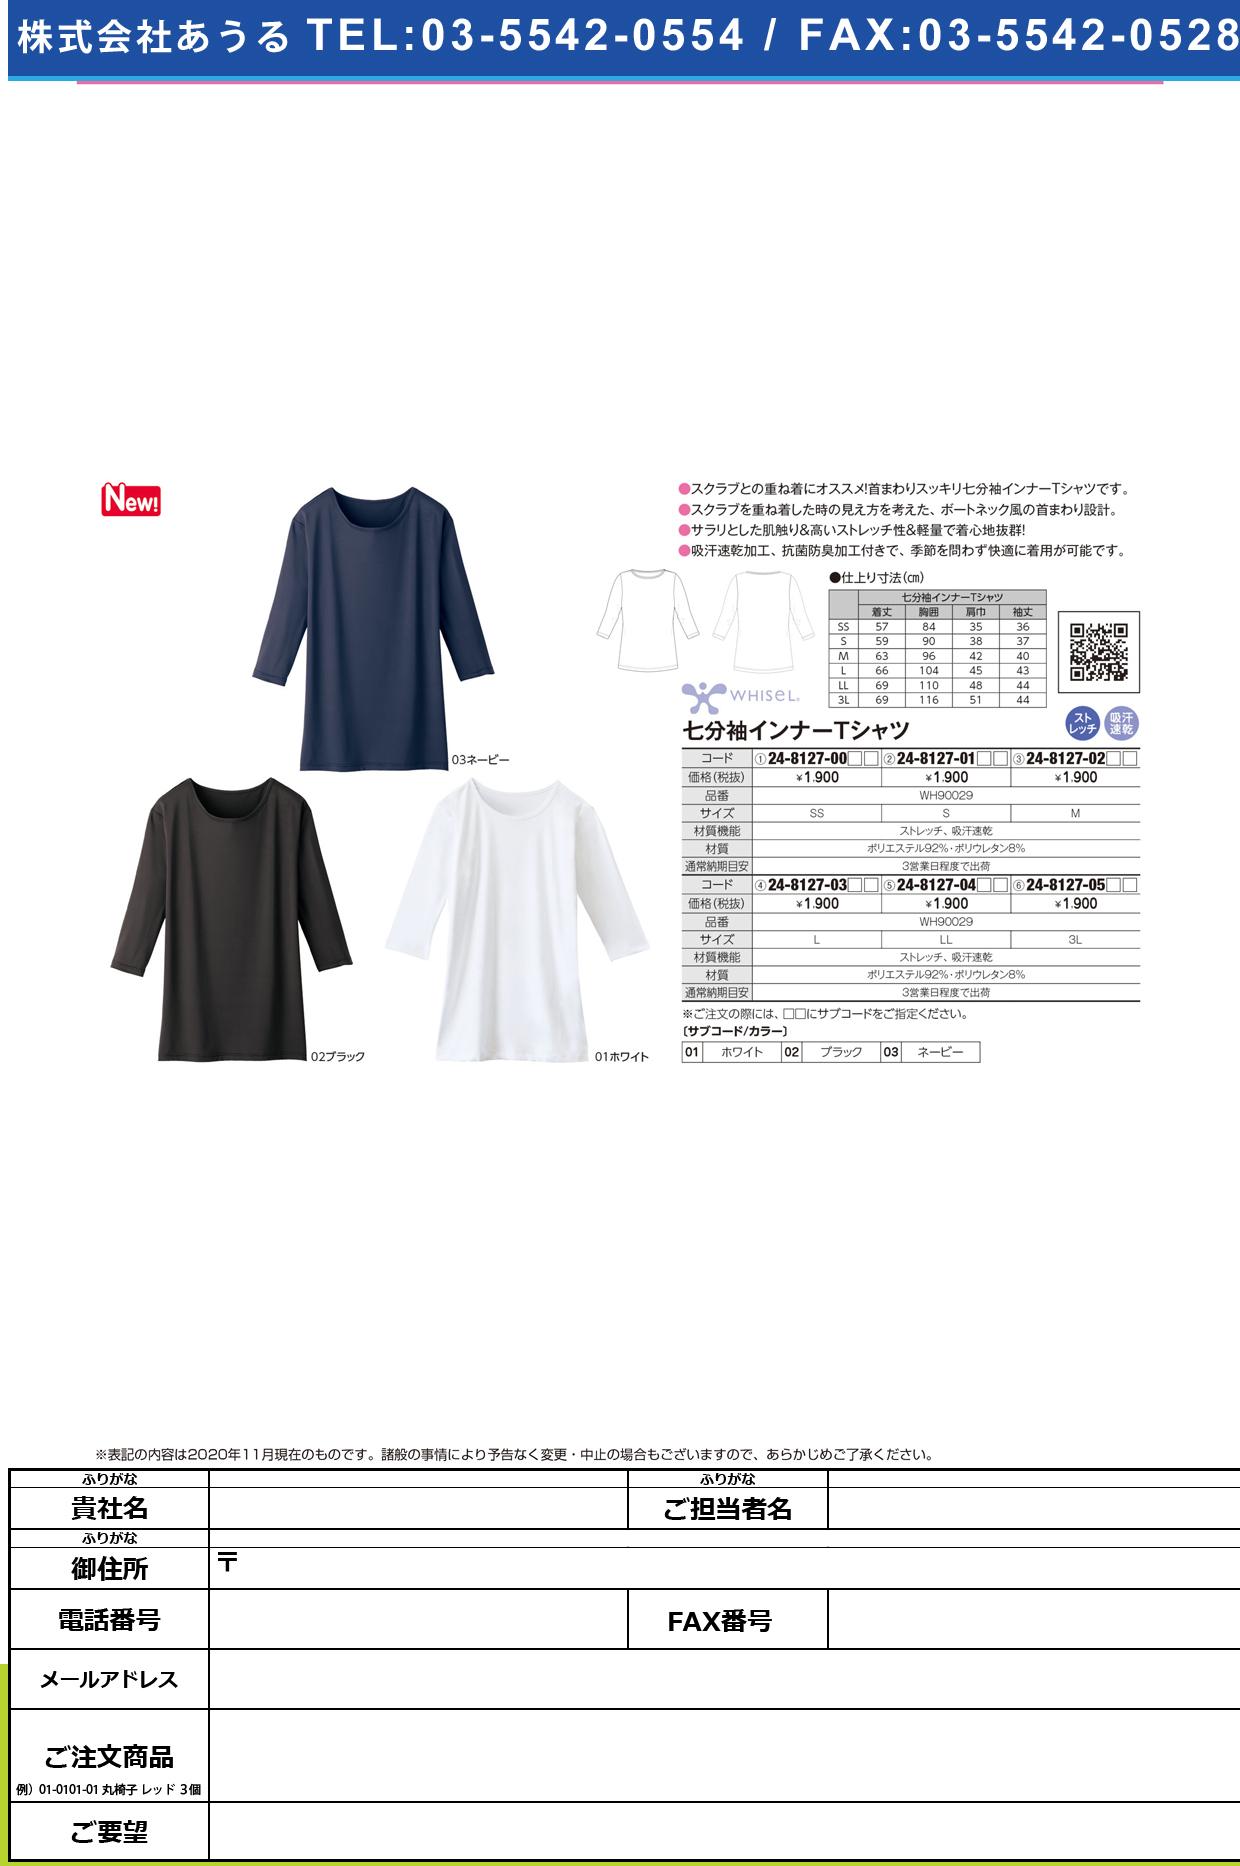 七分袖インナーTシャツ WH90029(M)WH90029(M)ネービー(24-8127-02-03)【自重堂】(販売単位:1)